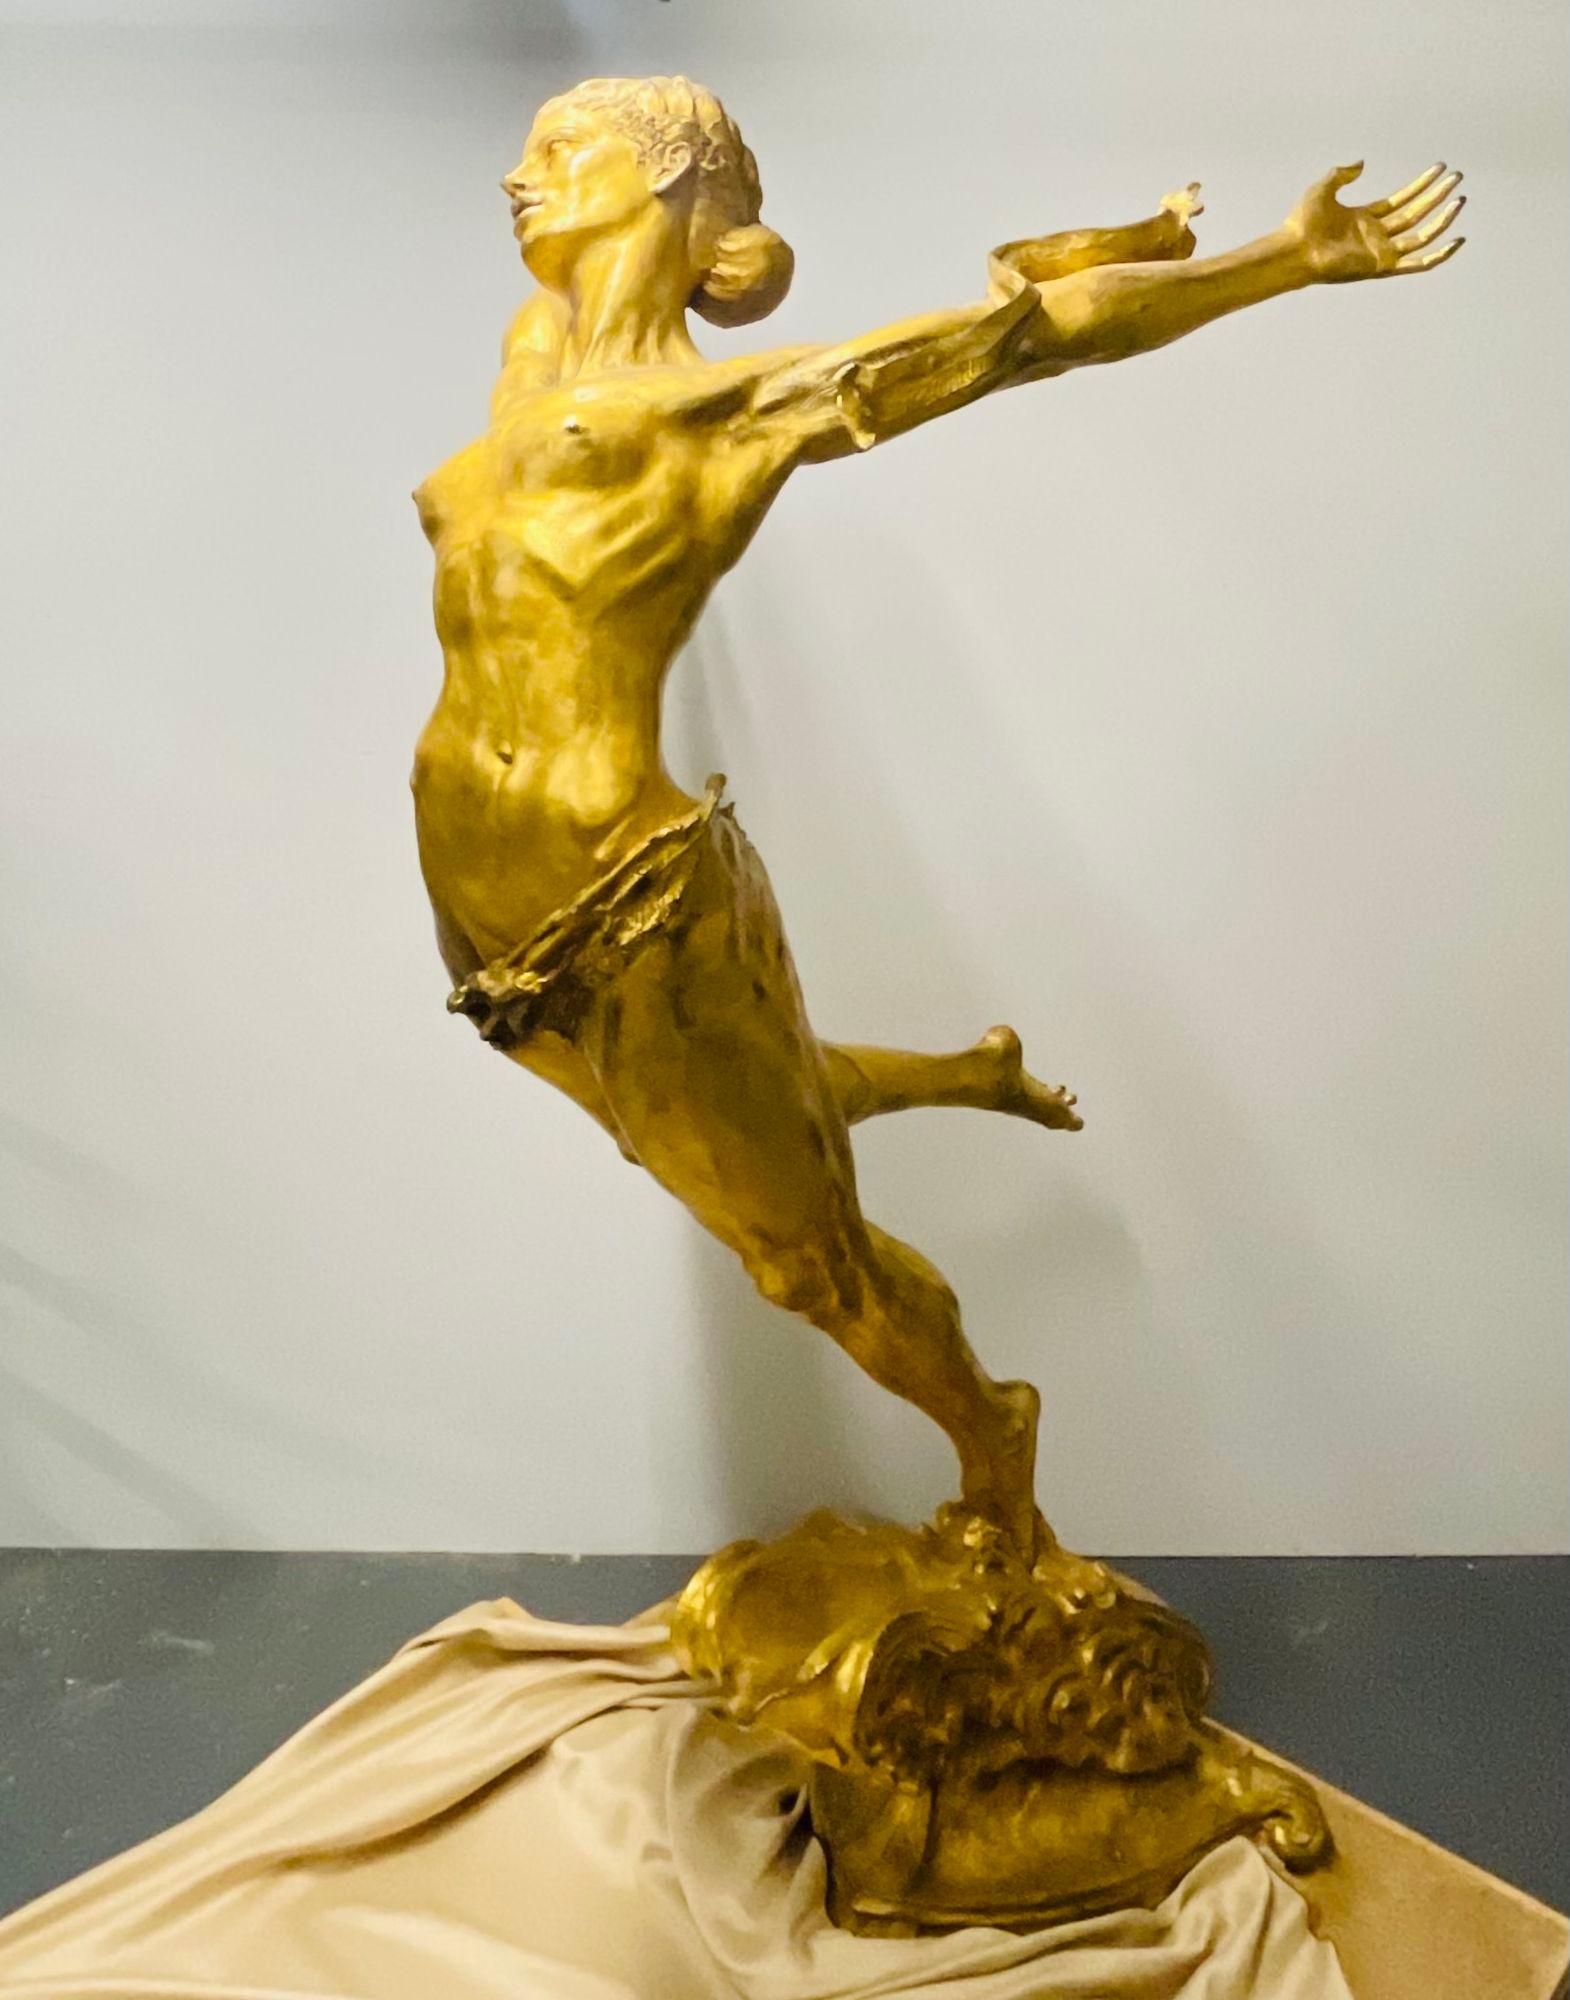 Dore Bronze 'Olympic Woman' Skulptur, die die Macht der Frau darstellt Ursprünglich in Auftrag gegeben von Avon Products als ein Ausstellungsstück für die Olympischen Spiele 1996 

Die überlebensgroße Skulptur des berühmten Bildhauers Greg Wyatt